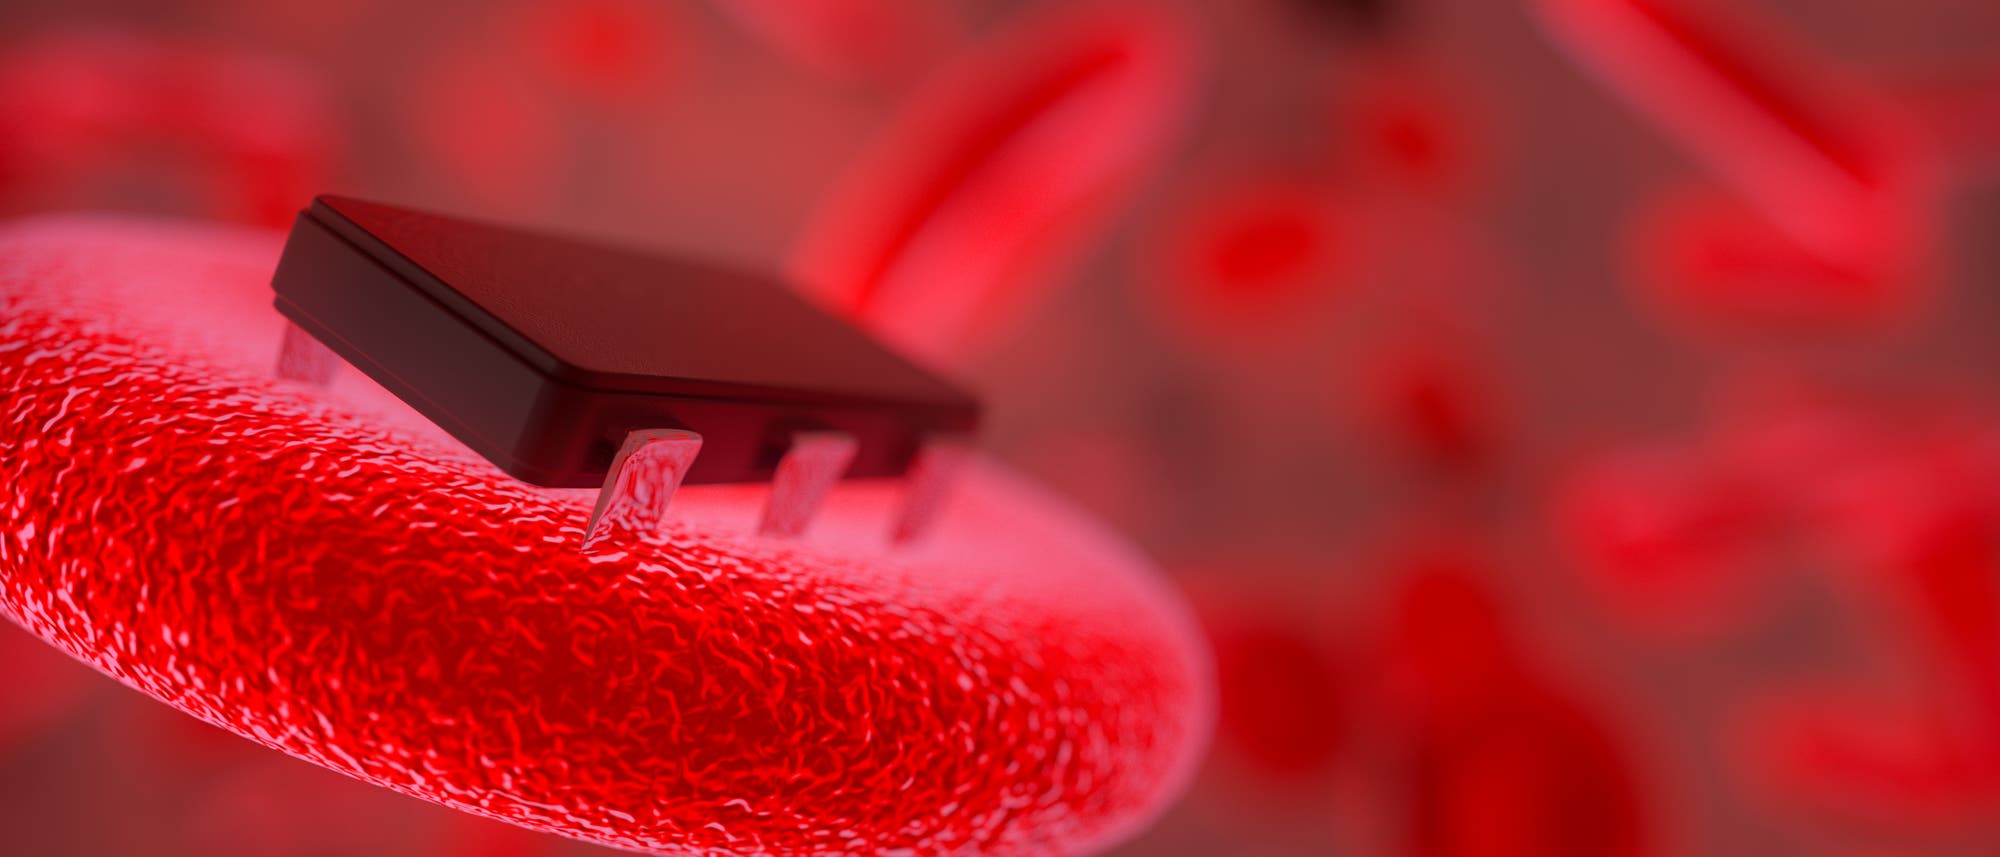 Bioimplantat-Fantasie: Ein rotes Blutkörperchen trägt eine Art Chip. Wichtig scheint auch hier eine funktionierende Schnittstelle zwischen Elektronik und Biologie zu sein. 